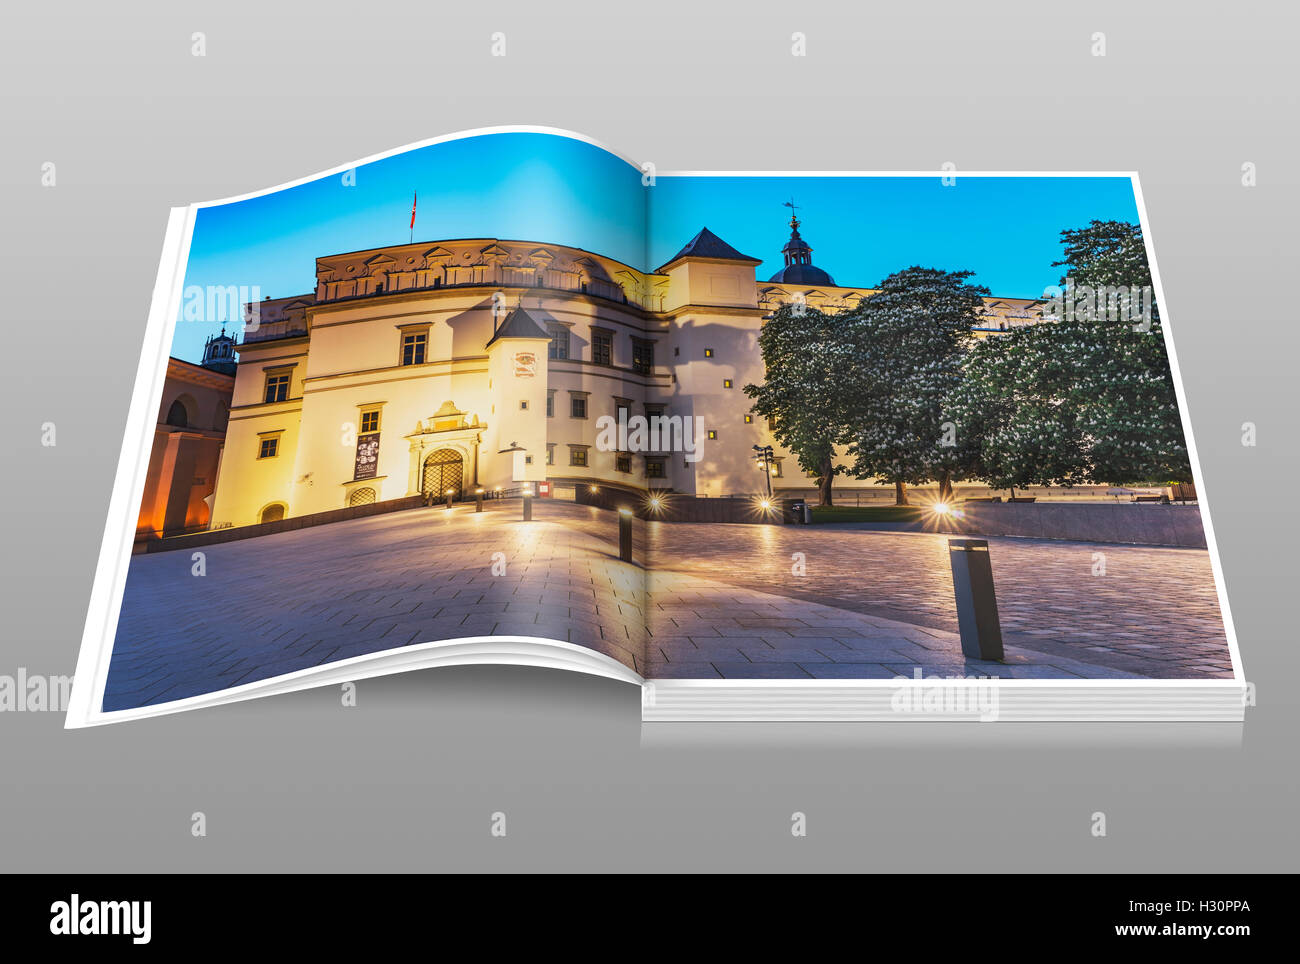 Le palais des Grands Ducs de Lituanie est situé dans la vieille ville de Vilnius, Lituanie, Pays Baltes, Europe Banque D'Images